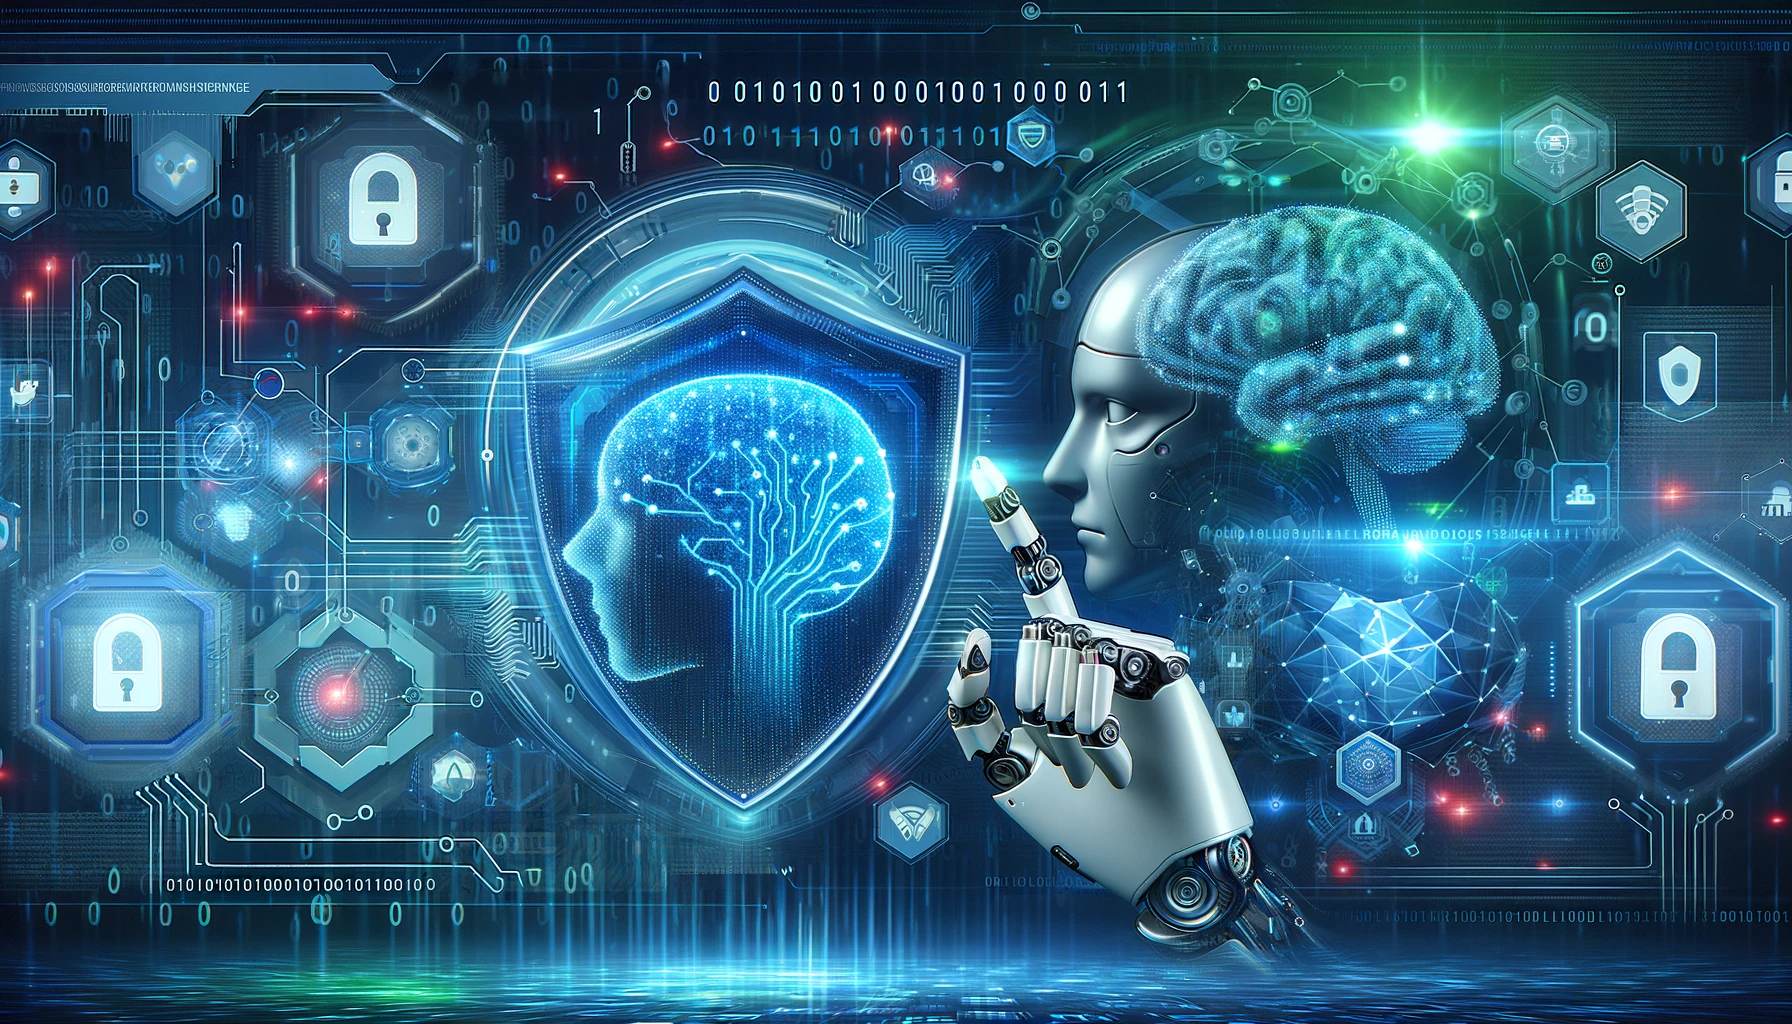 Imagen de ciberseguridad e inteligencia artificial con un escudo, mano robótica y elementos digitales en azules, grises y verdes.